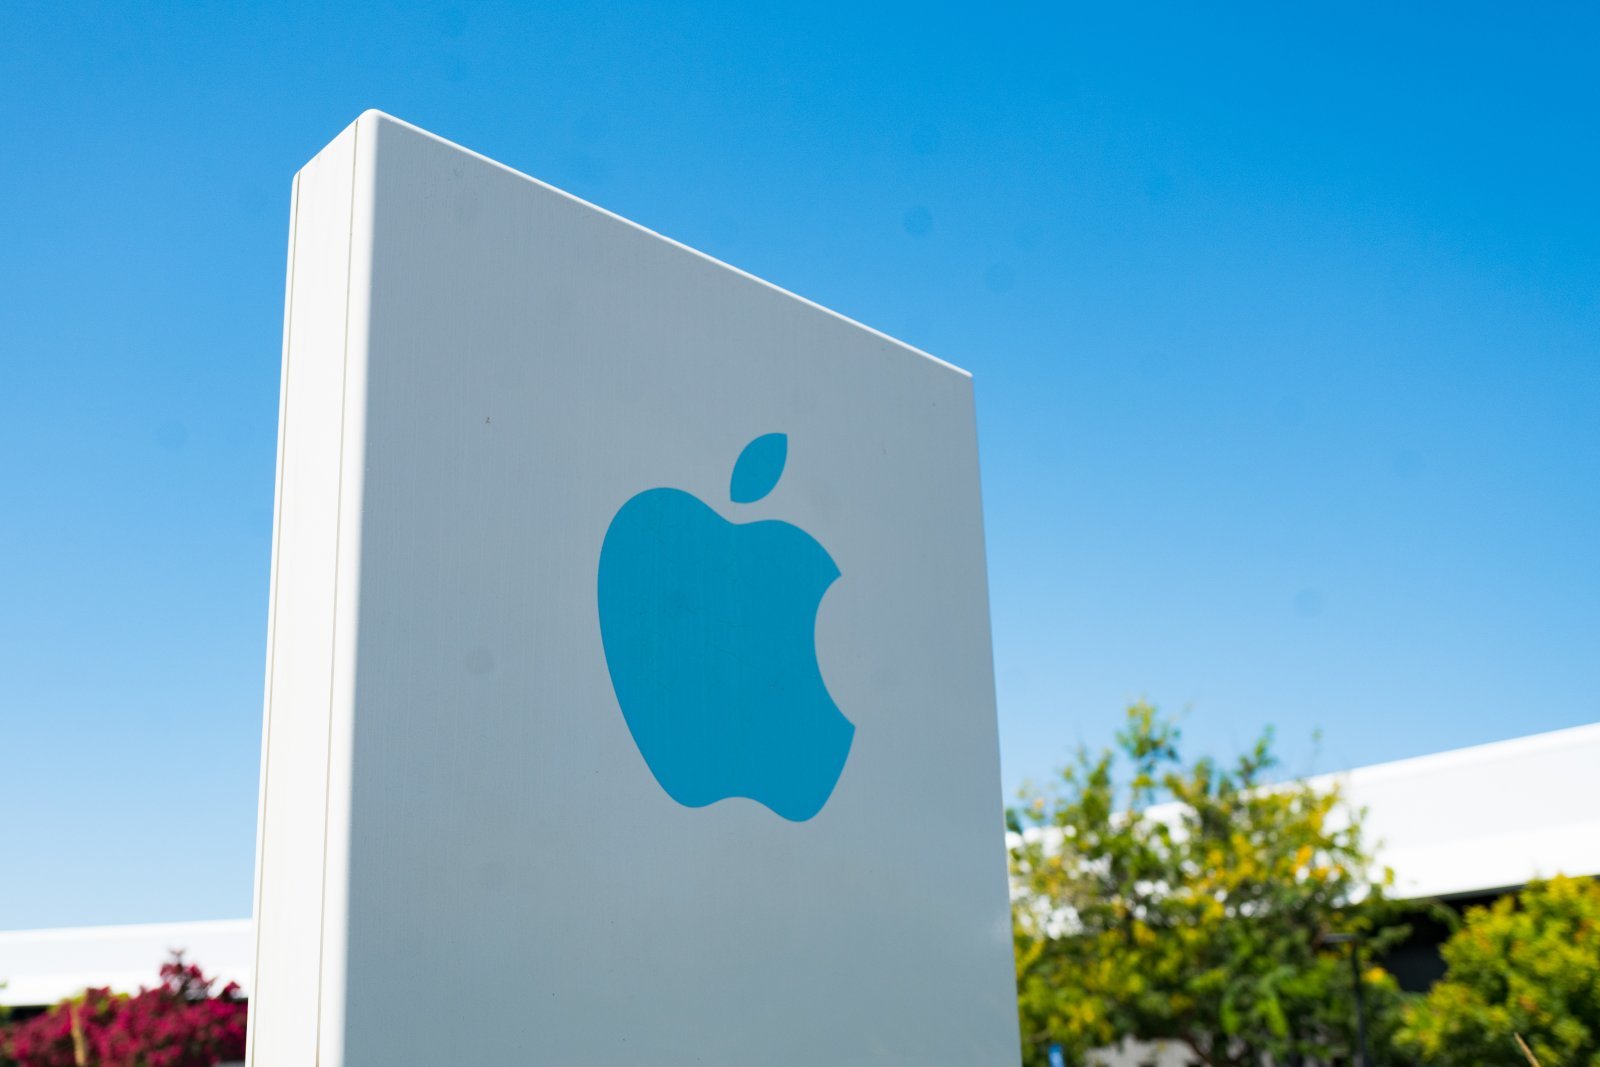 ศาลอเมริกาตัดสิน Apple ละเมิดสิทธิบัตร Qualcomm อีกสามรายการ โดนปรับอ่วม!